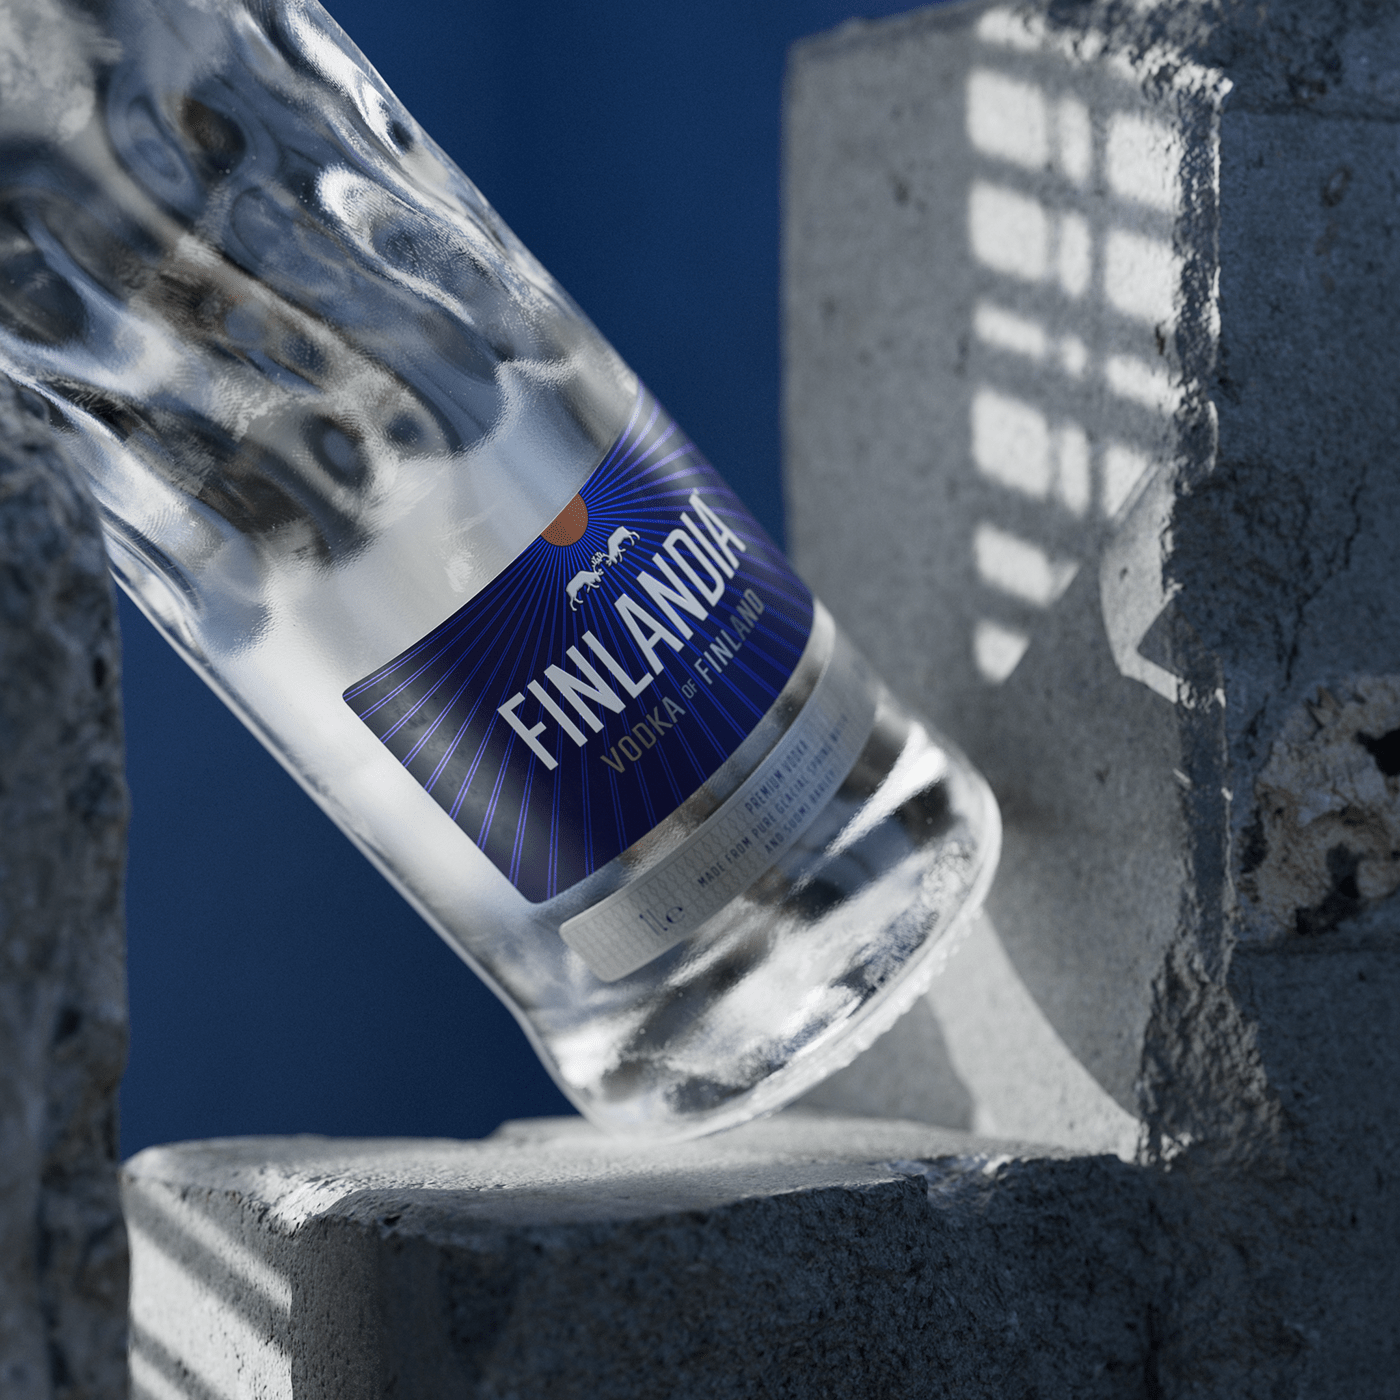 finland CGI bottle alcohol Vodka visualization 3d modeling texturing Render